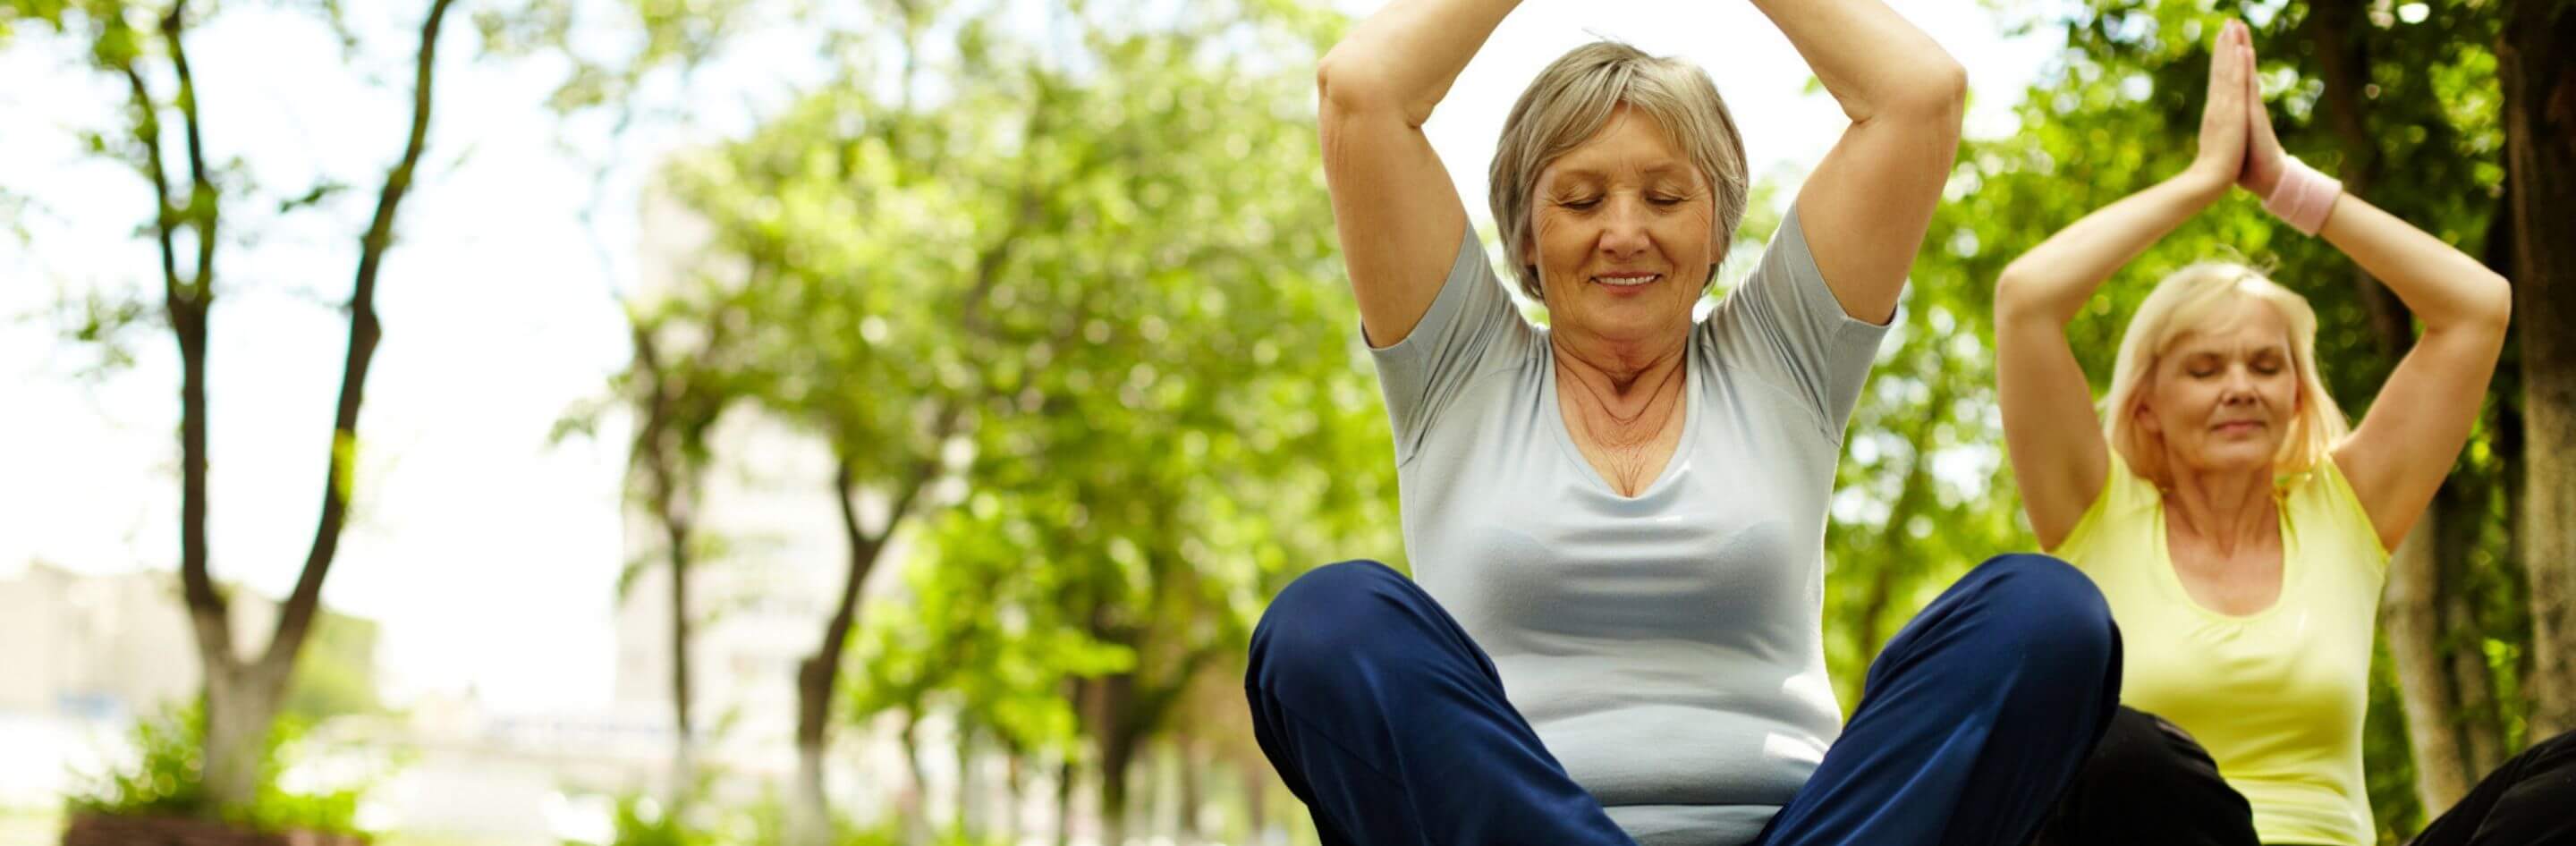 Las actividades físicas más recomendadas para los adultos mayores